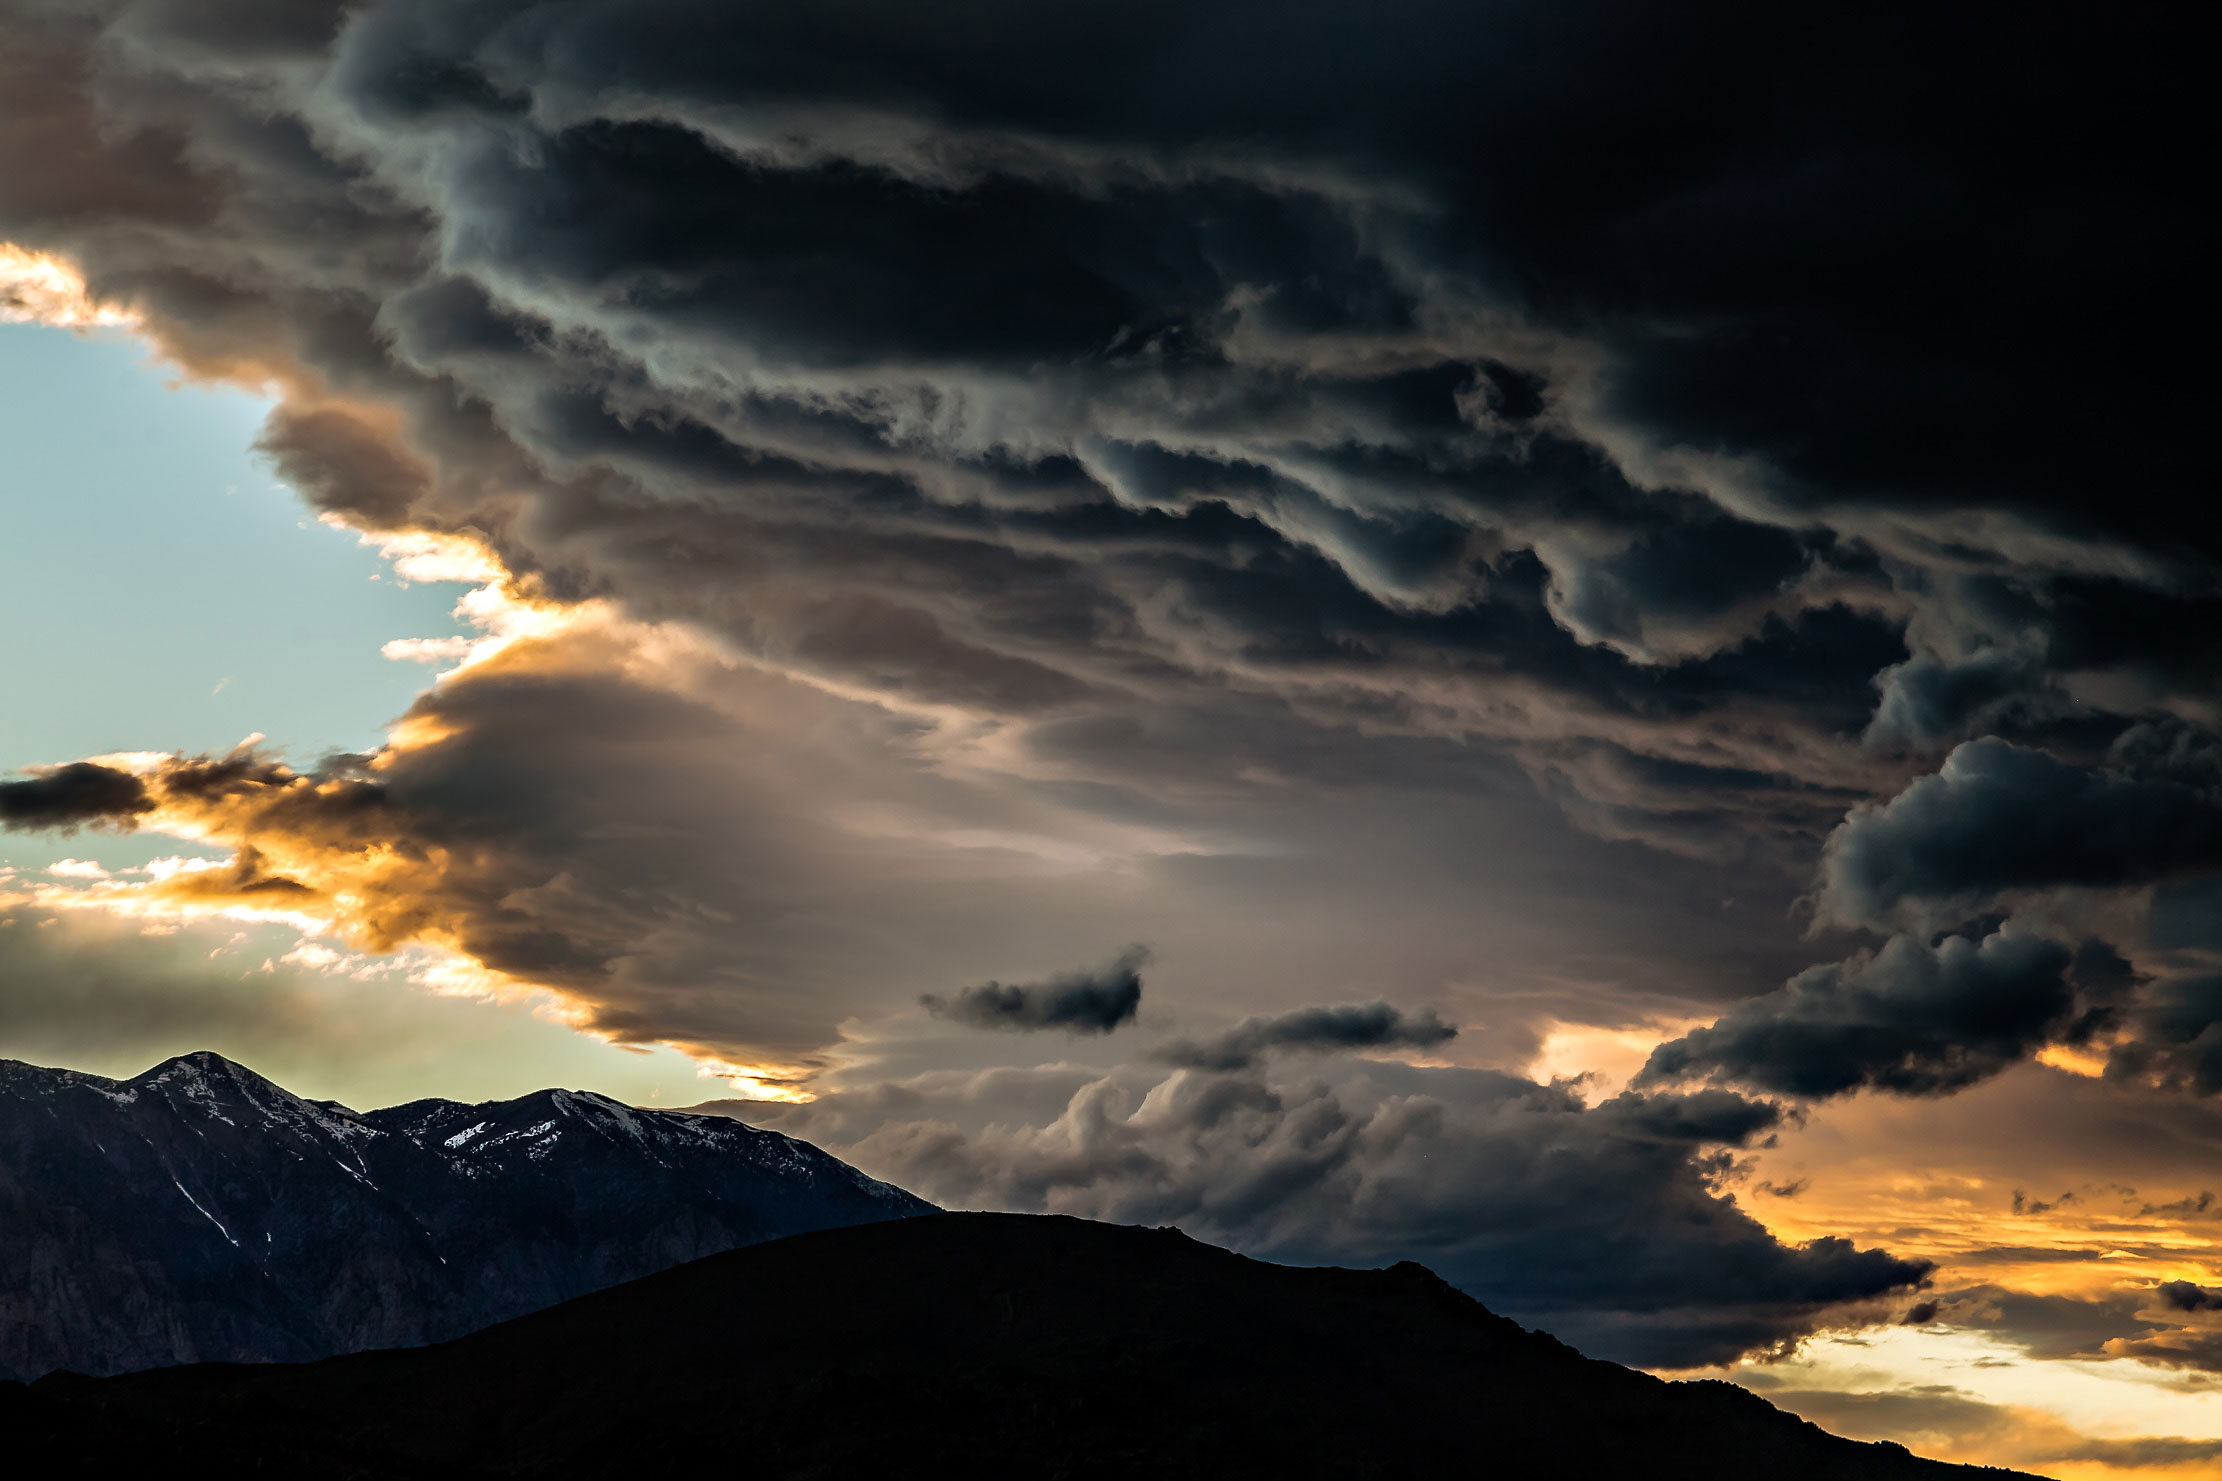 Eastern Sierra Storm Clouds